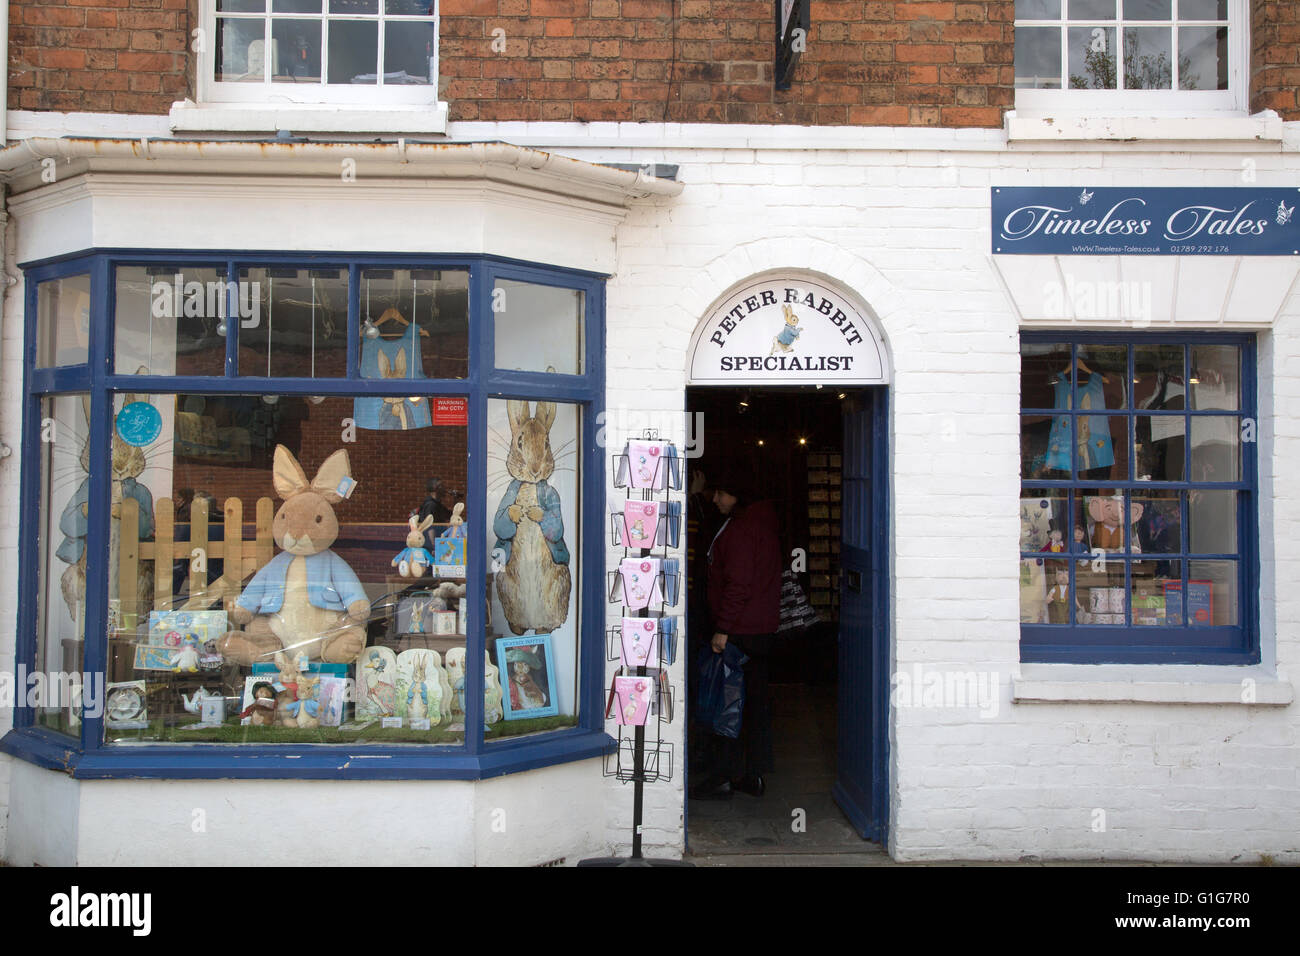 Zeitlose Geschichten, Henley Street, Stratford-Upon-Avon, England, Vereinigtes Königreich Stockfoto